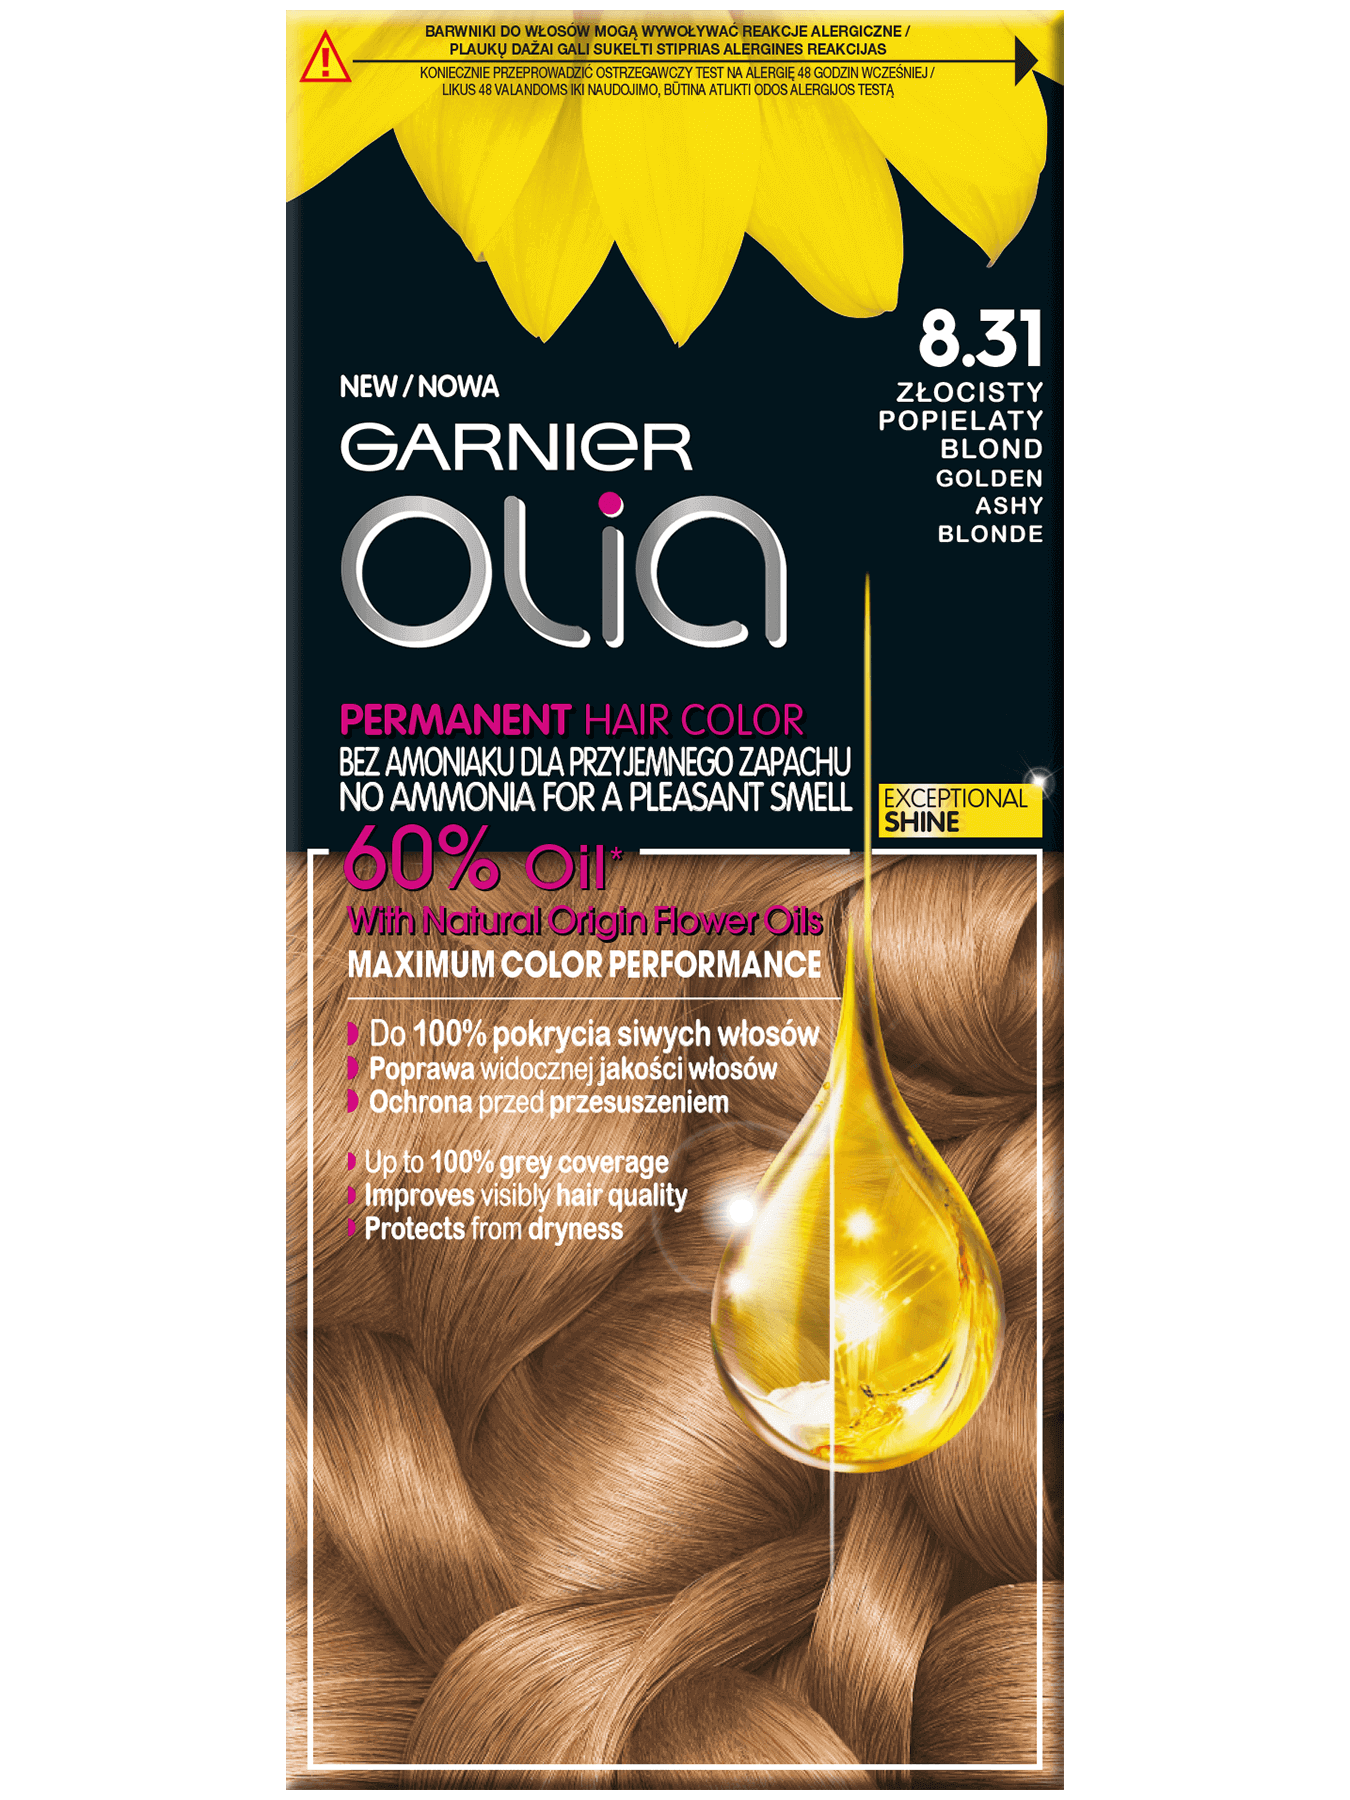 garnier-olia-8-3-1-zlocisty-popielaty-blond-1350x1800